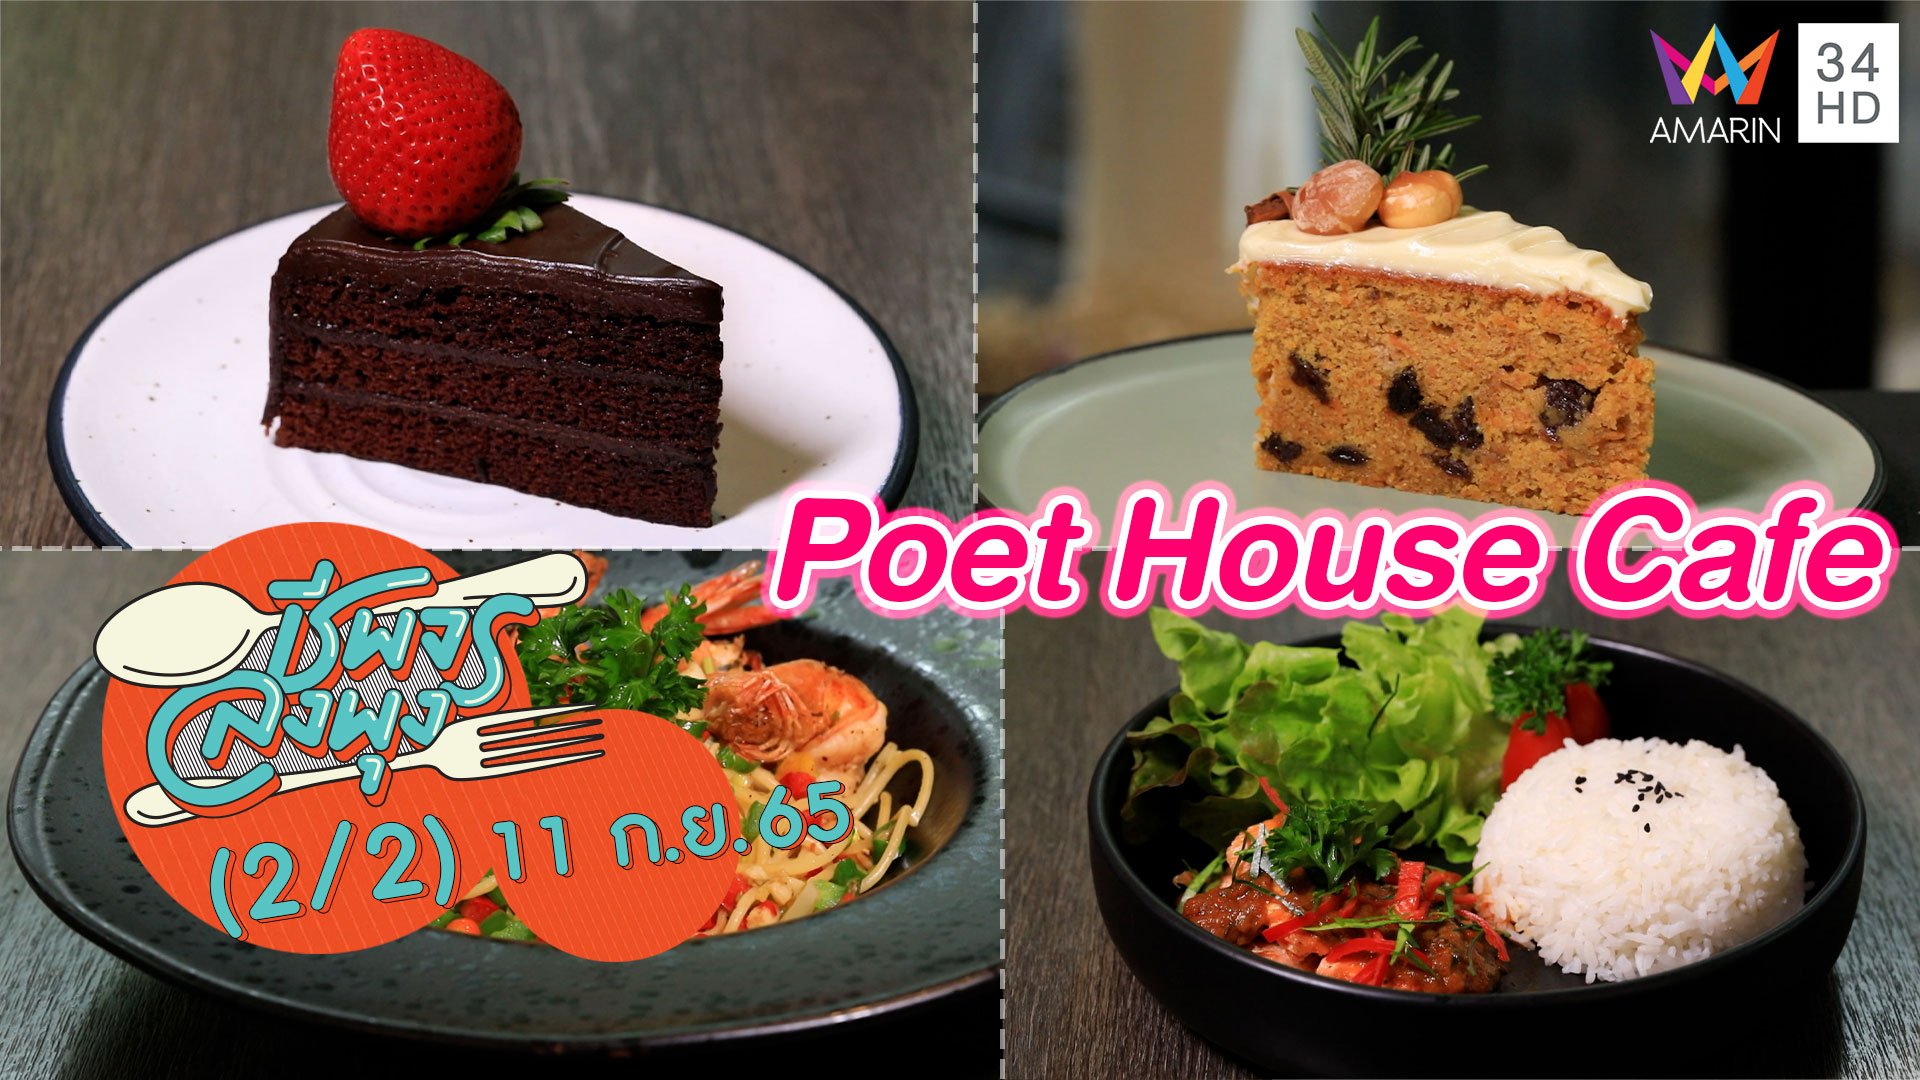 คาเฟ่เล็กๆ บรรยากาศอบอุ่น @ ร้าน Poet House Cafe | ชีพจรลงพุง | 11 ก.ย. 65 (2/2) | AMARIN TVHD34